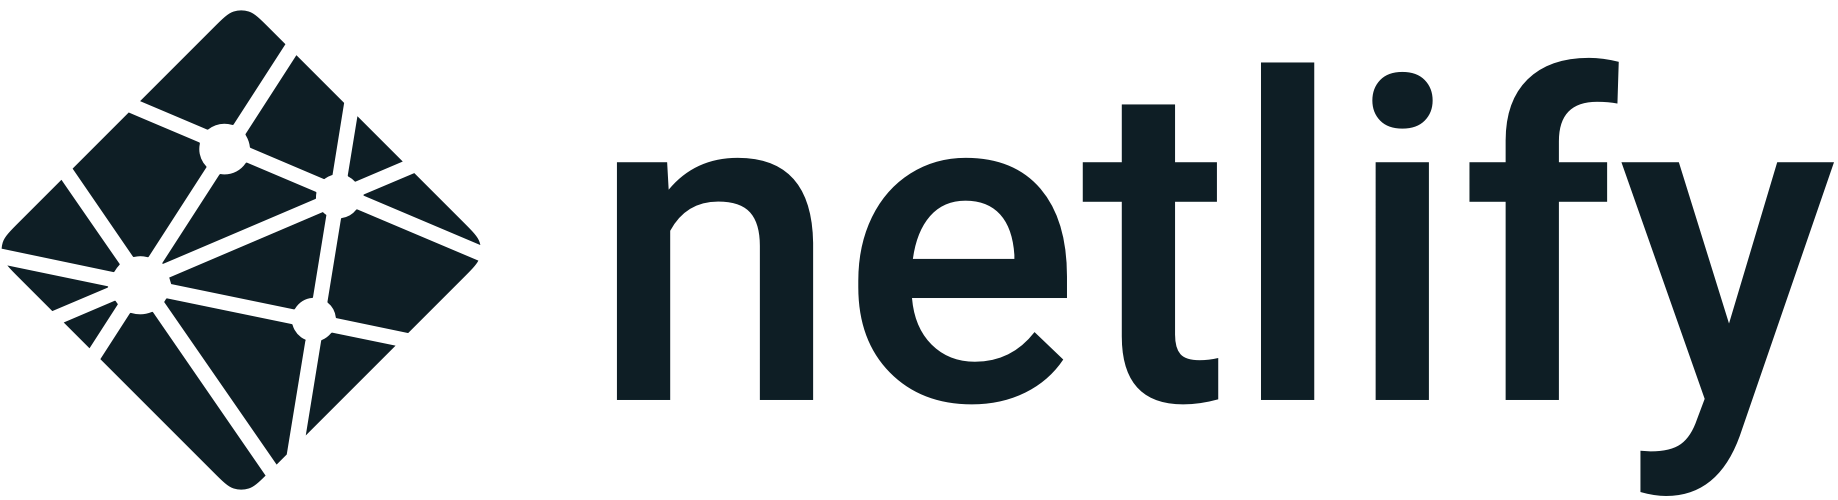 netlify-logo